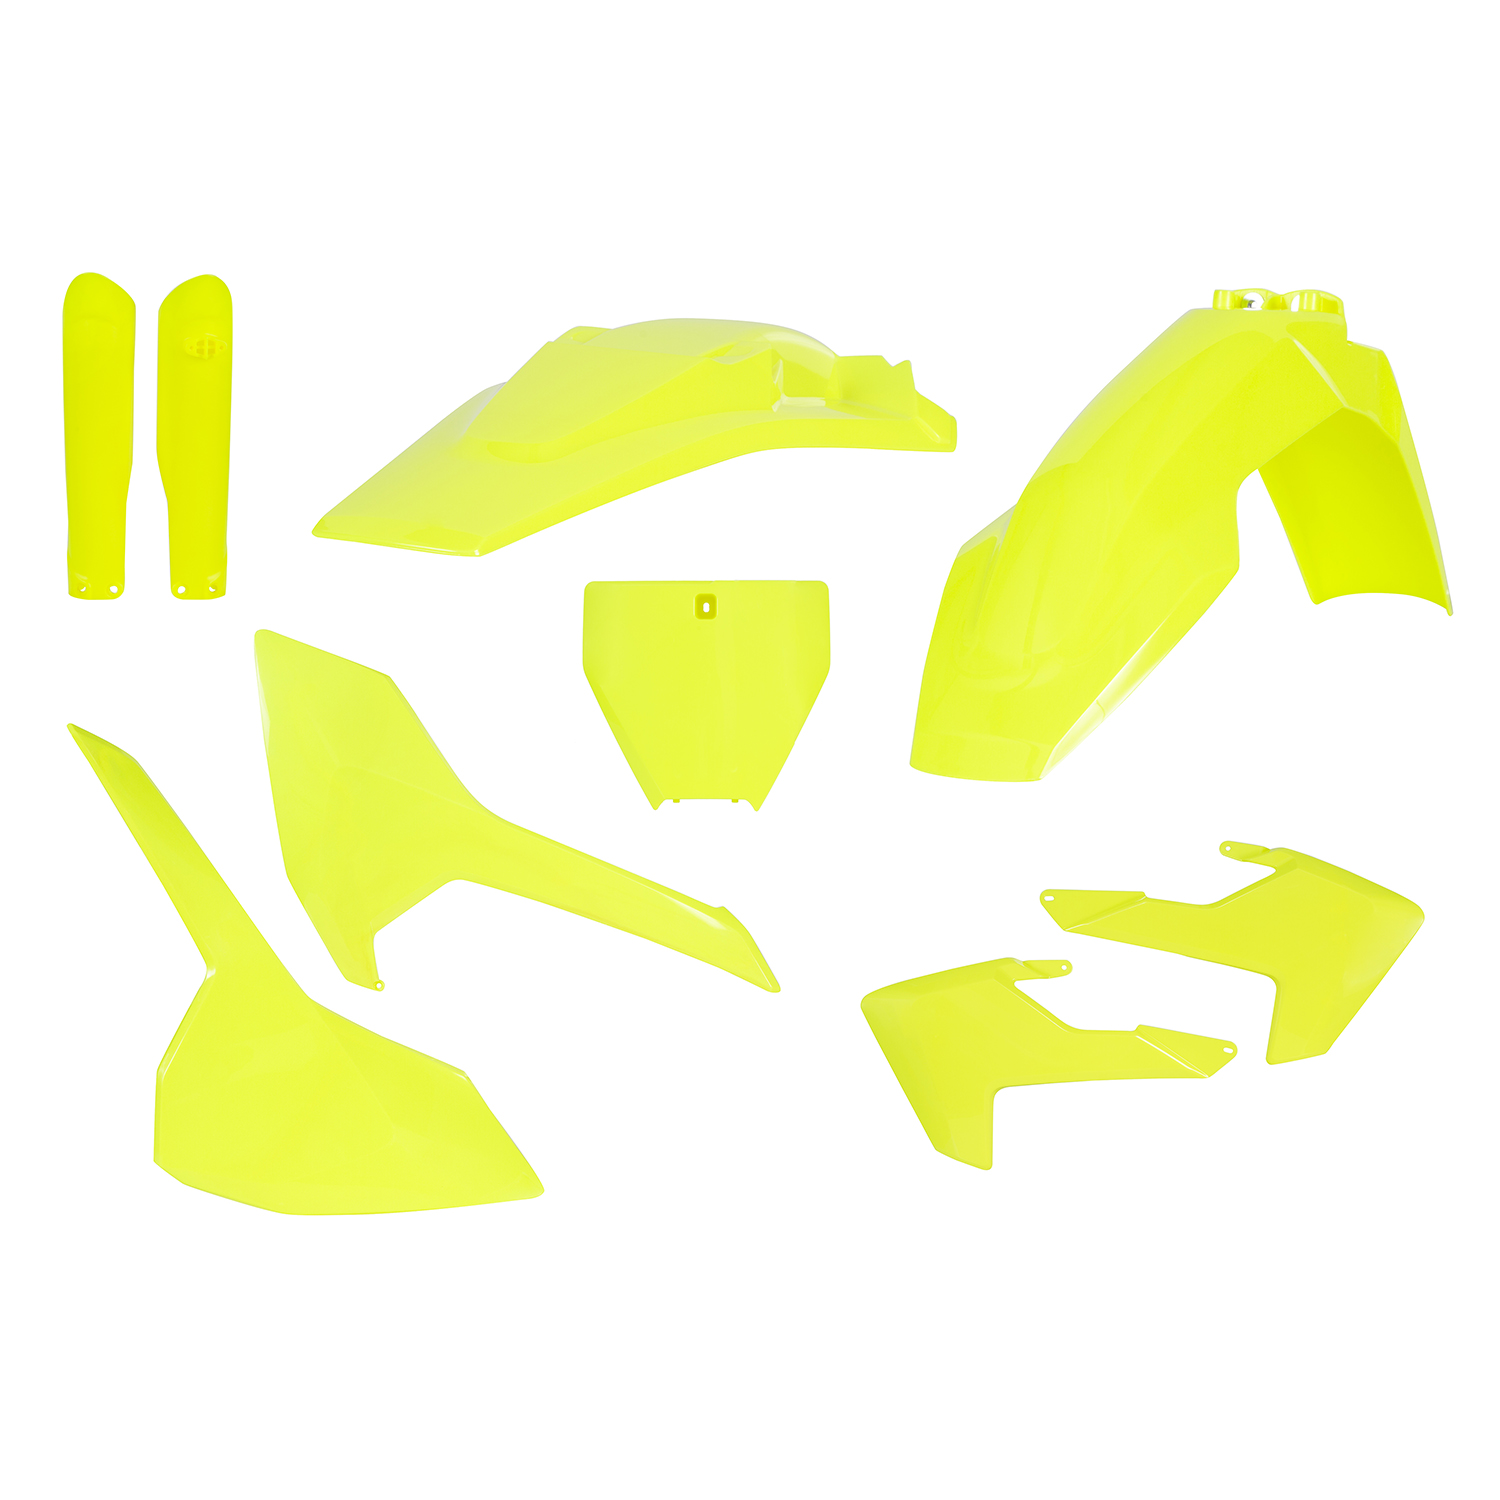 Acerbis Plastic Kit Full-Kit Husqvarna TC 125/250, FC 250/350/450 16-18, Fluo-Yellow